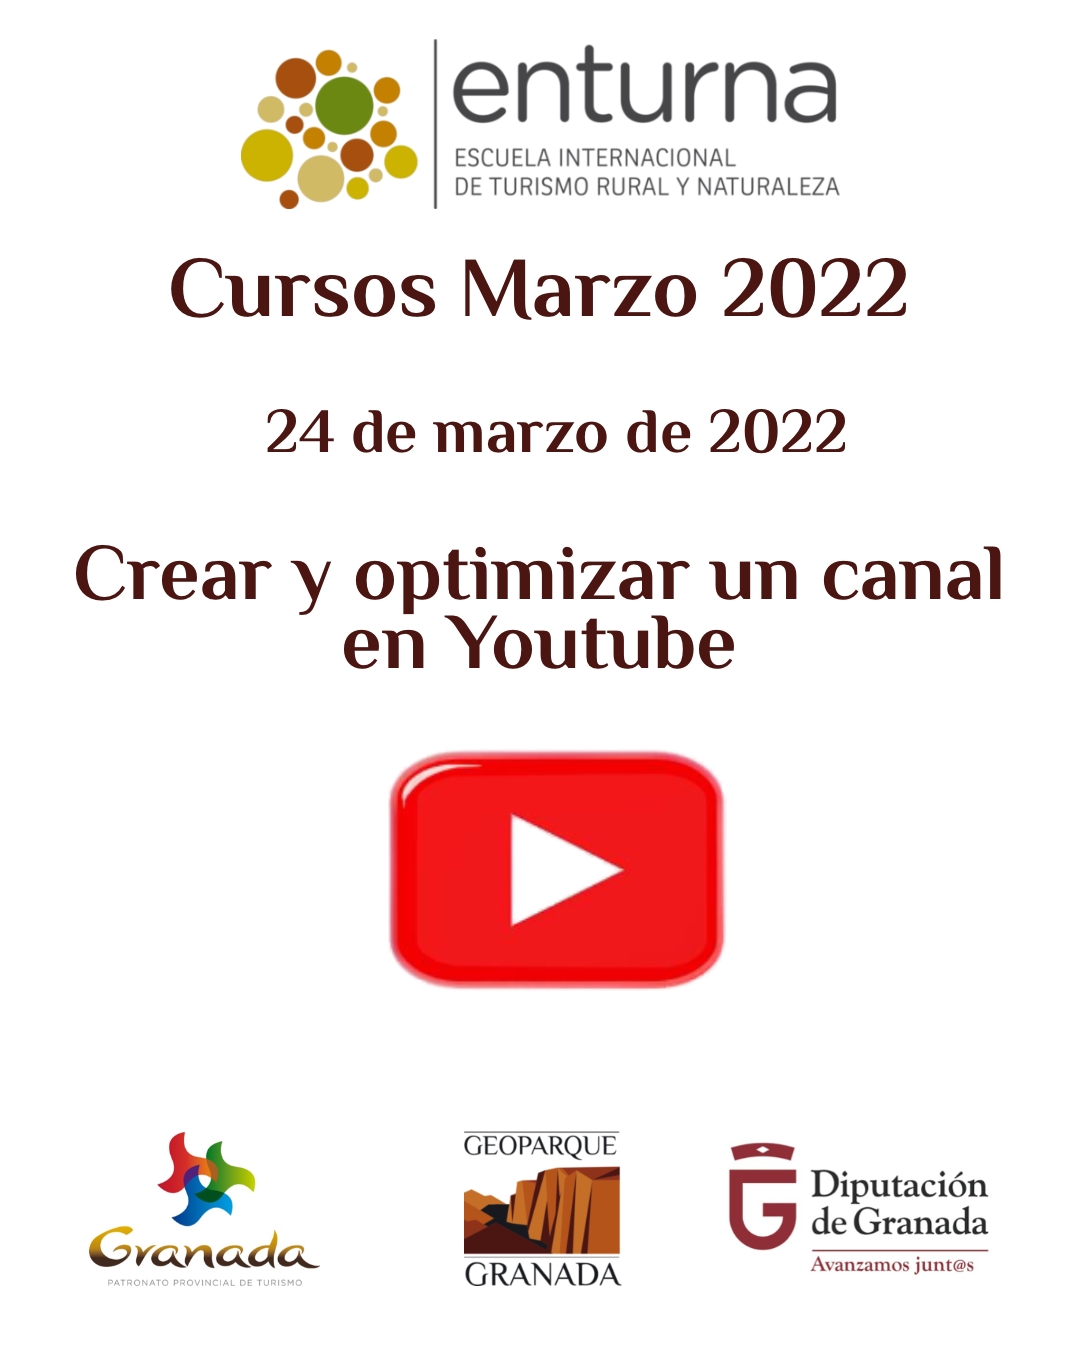 CURSOS ENTURNA MARZO youtube - CREAR Y OPTIMIZAR UN CANAL EN YOUTUBE - Geoparque de Granada